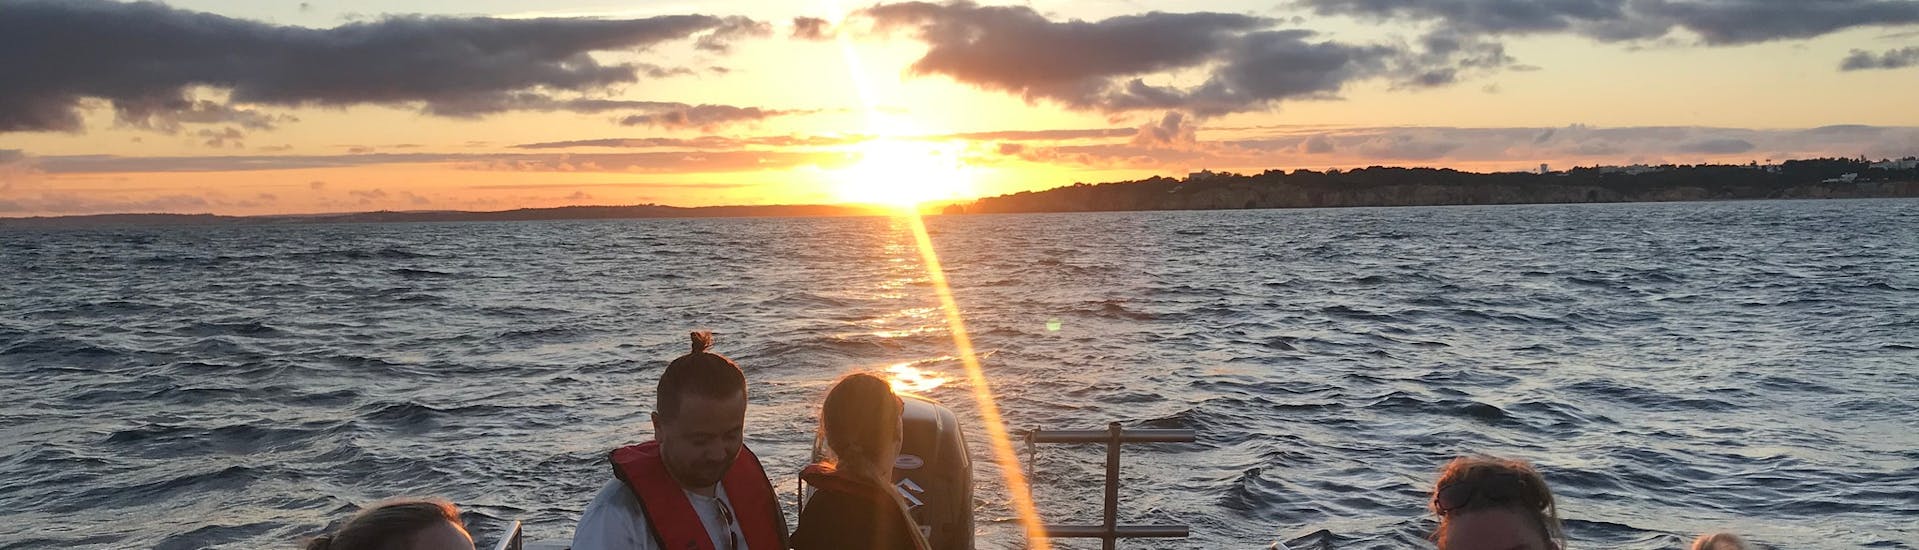 Gita in barca al tramonto ad Alvor con sosta per nuotare.